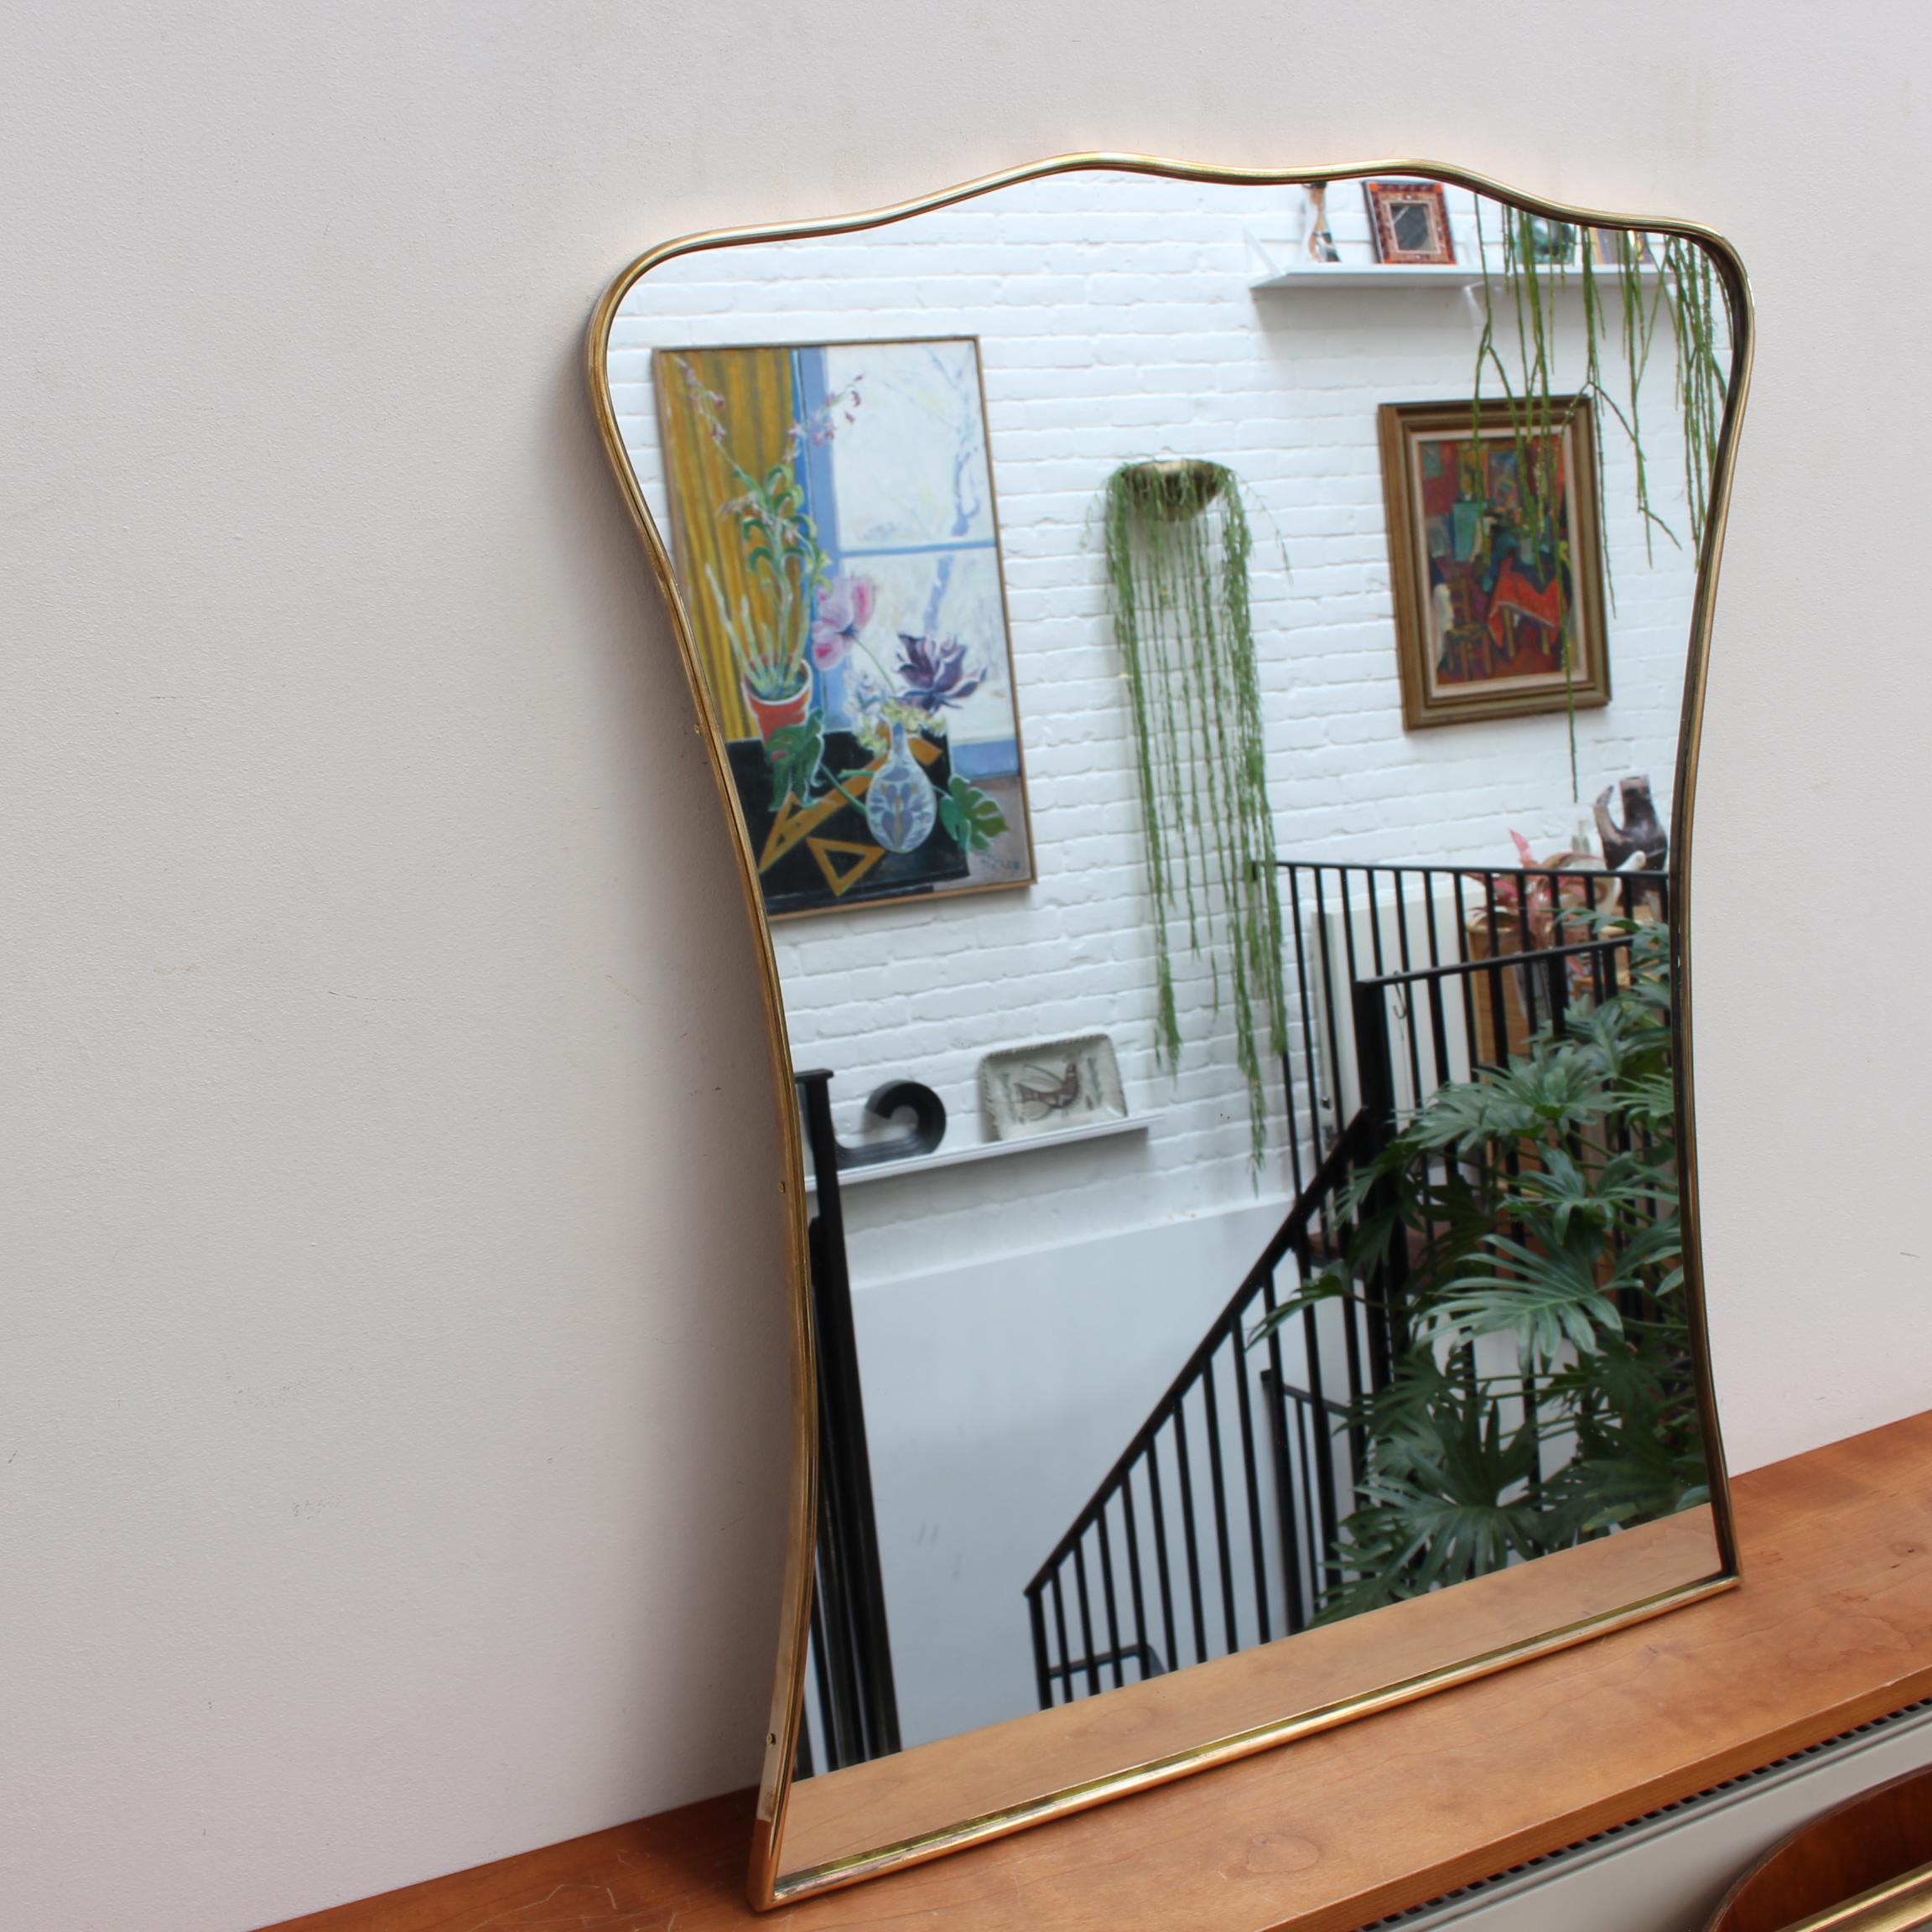 Italienischer Wandspiegel aus der Mitte des Jahrhunderts mit Messingrahmen (ca. 1950). Der elegante, robuste Spiegel hat eine sehr originelle und reizvolle Form. Wie andere Spiegel dieses Stils sind sie stets klassisch elegant und unverwechselbar.